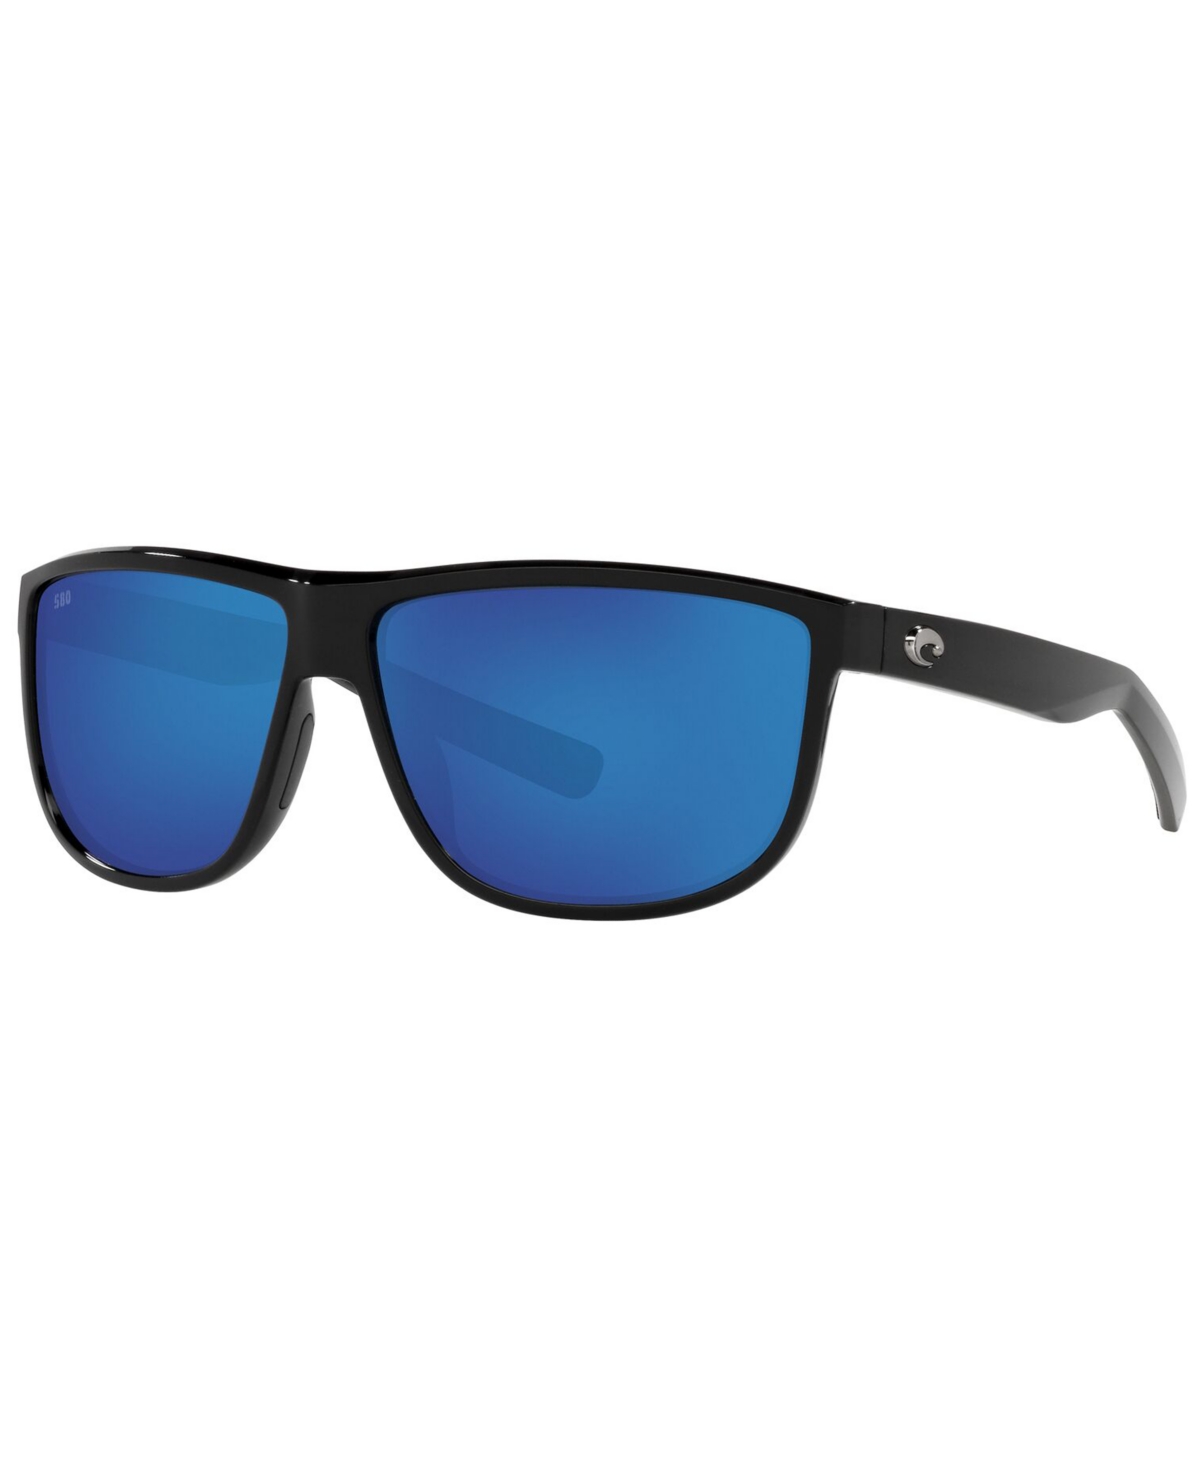 Costa Del Mar Rincondo Polarized Sunglasses, 6s9010 61 In Shiny Black,blue Mirror G